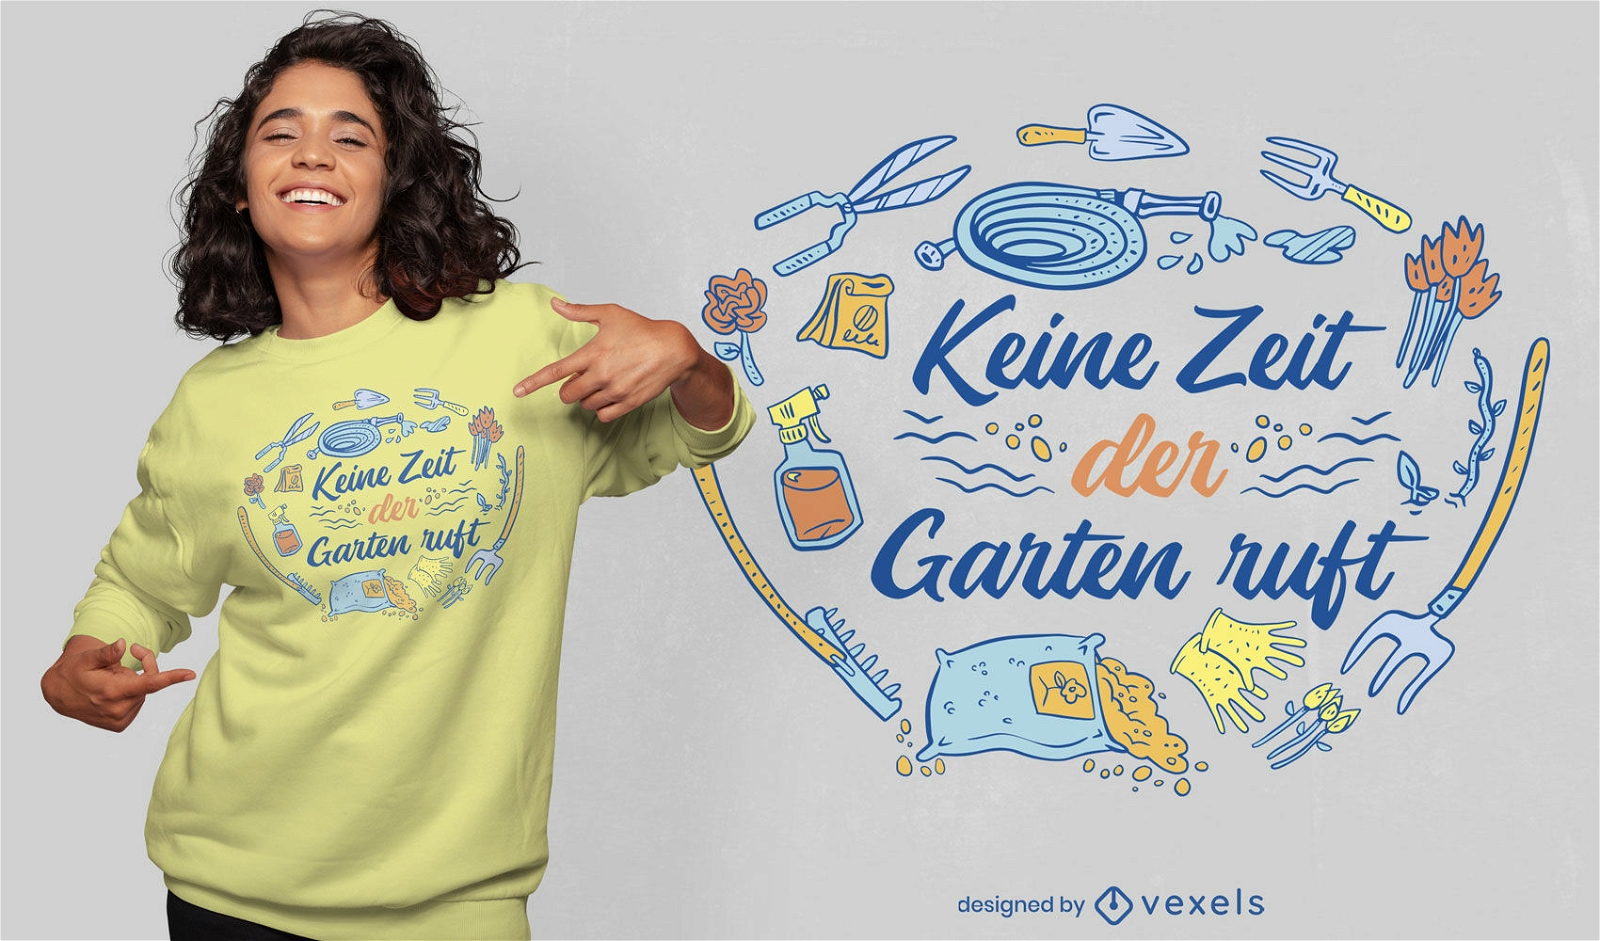 Cooles deutsches T-Shirt Design für die Gartenarbeit